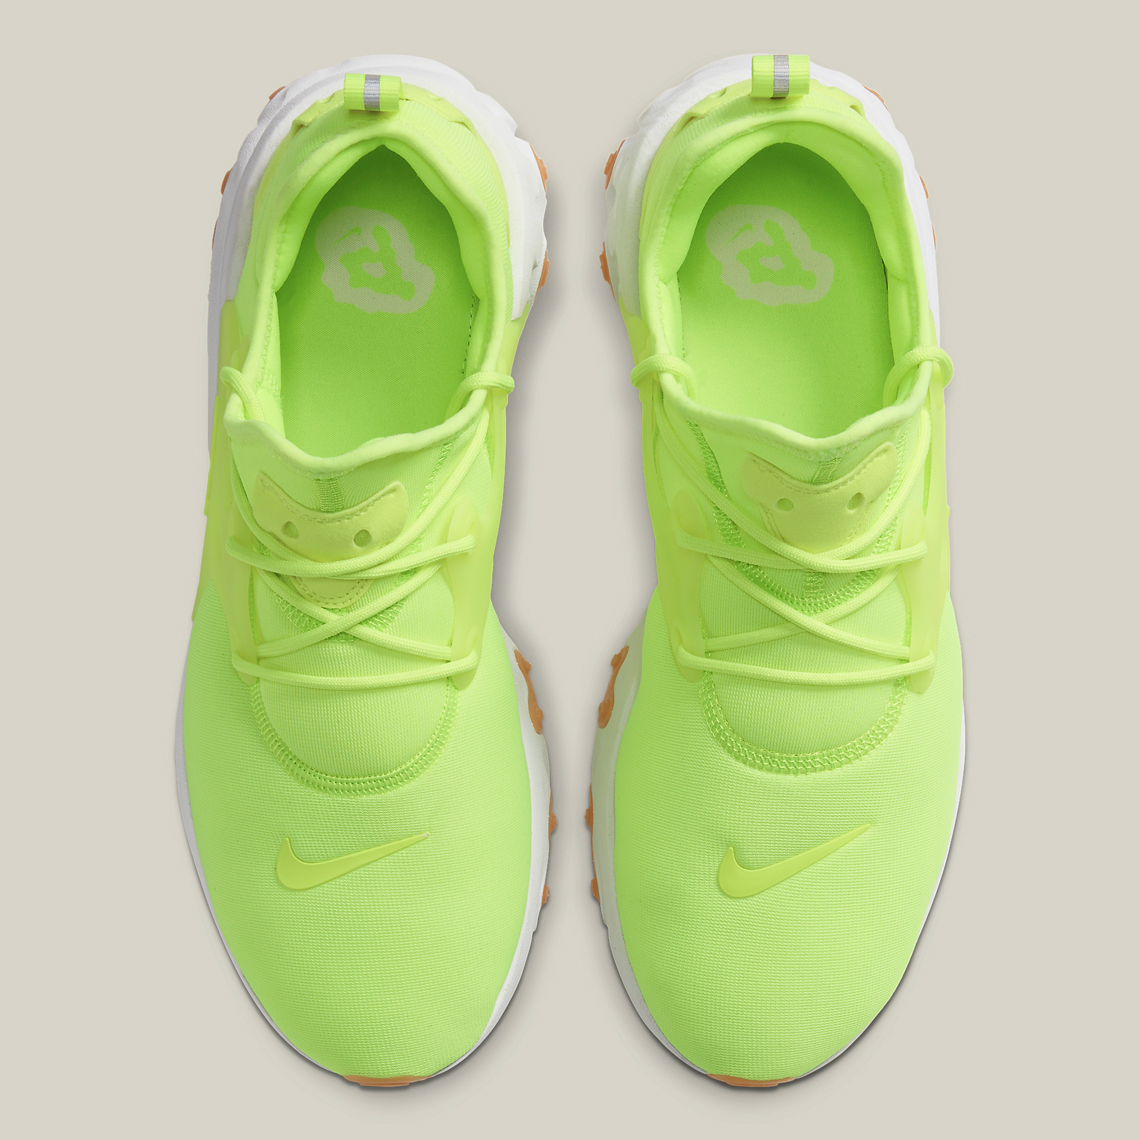 Nike React Presto Volt AV2605-702 | SneakerNews.com